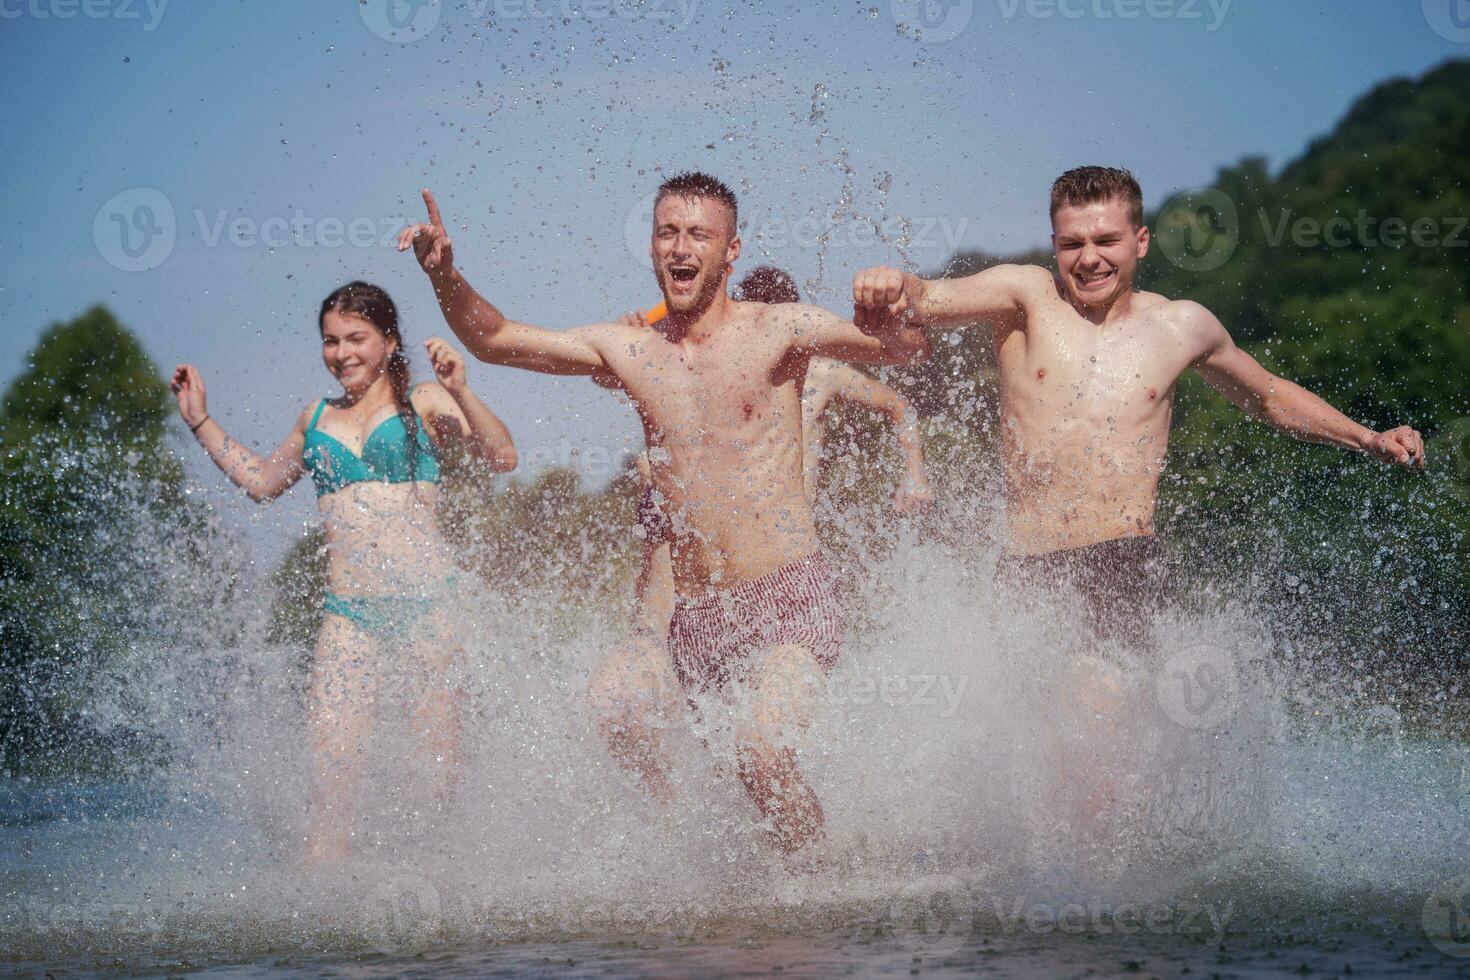 estate gioia amici avendo divertimento su fiume foto